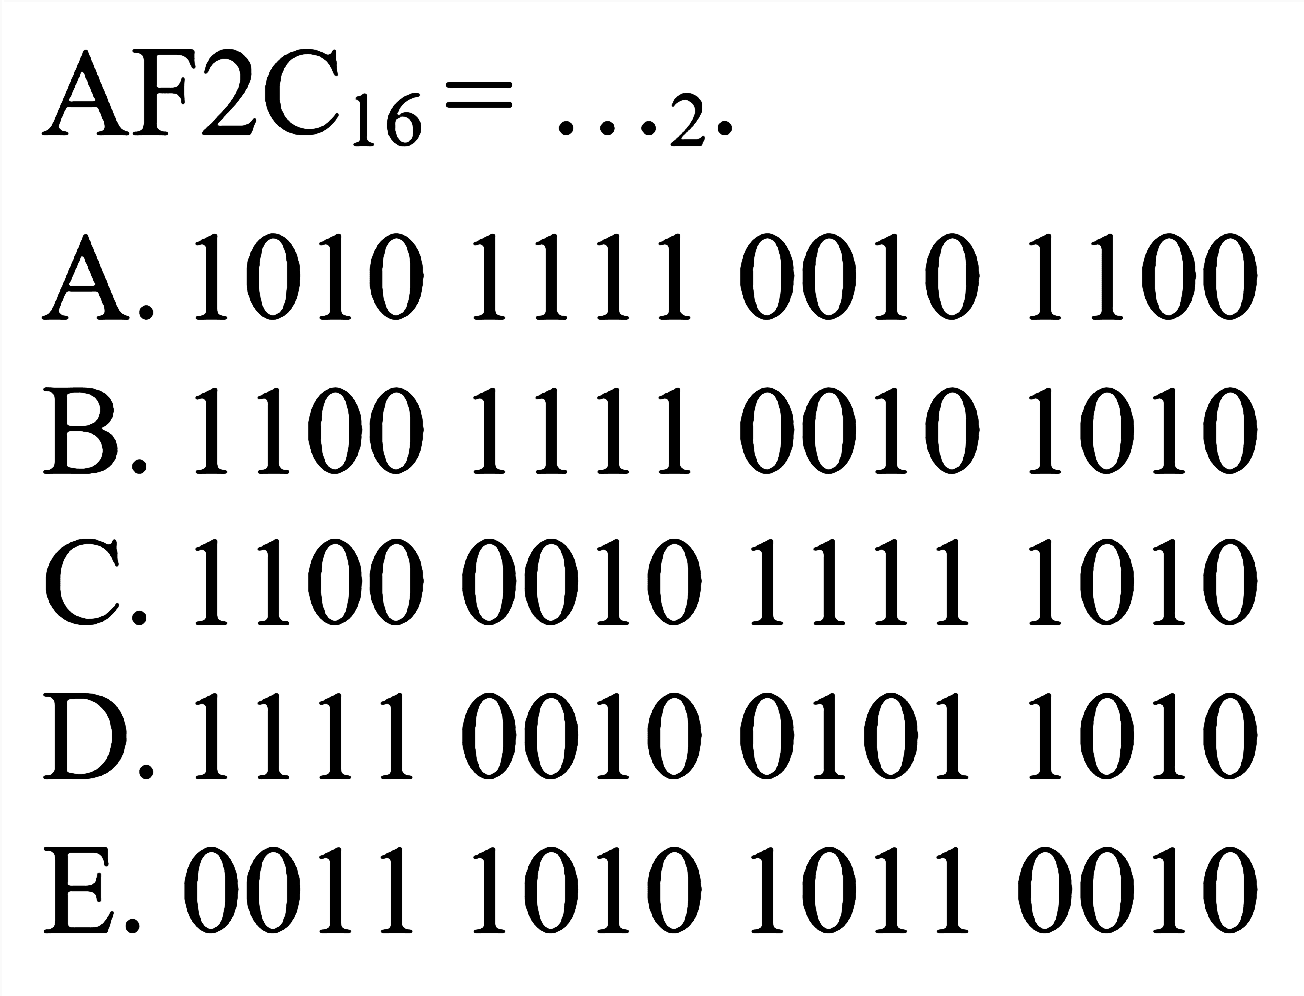  AF^(2 C_(16))=...{ )_(2) .
A. 1010111100101100
B. 1100111100101010
C. 1100001011111010
D. 1111001001011010
E. 0011101010110010